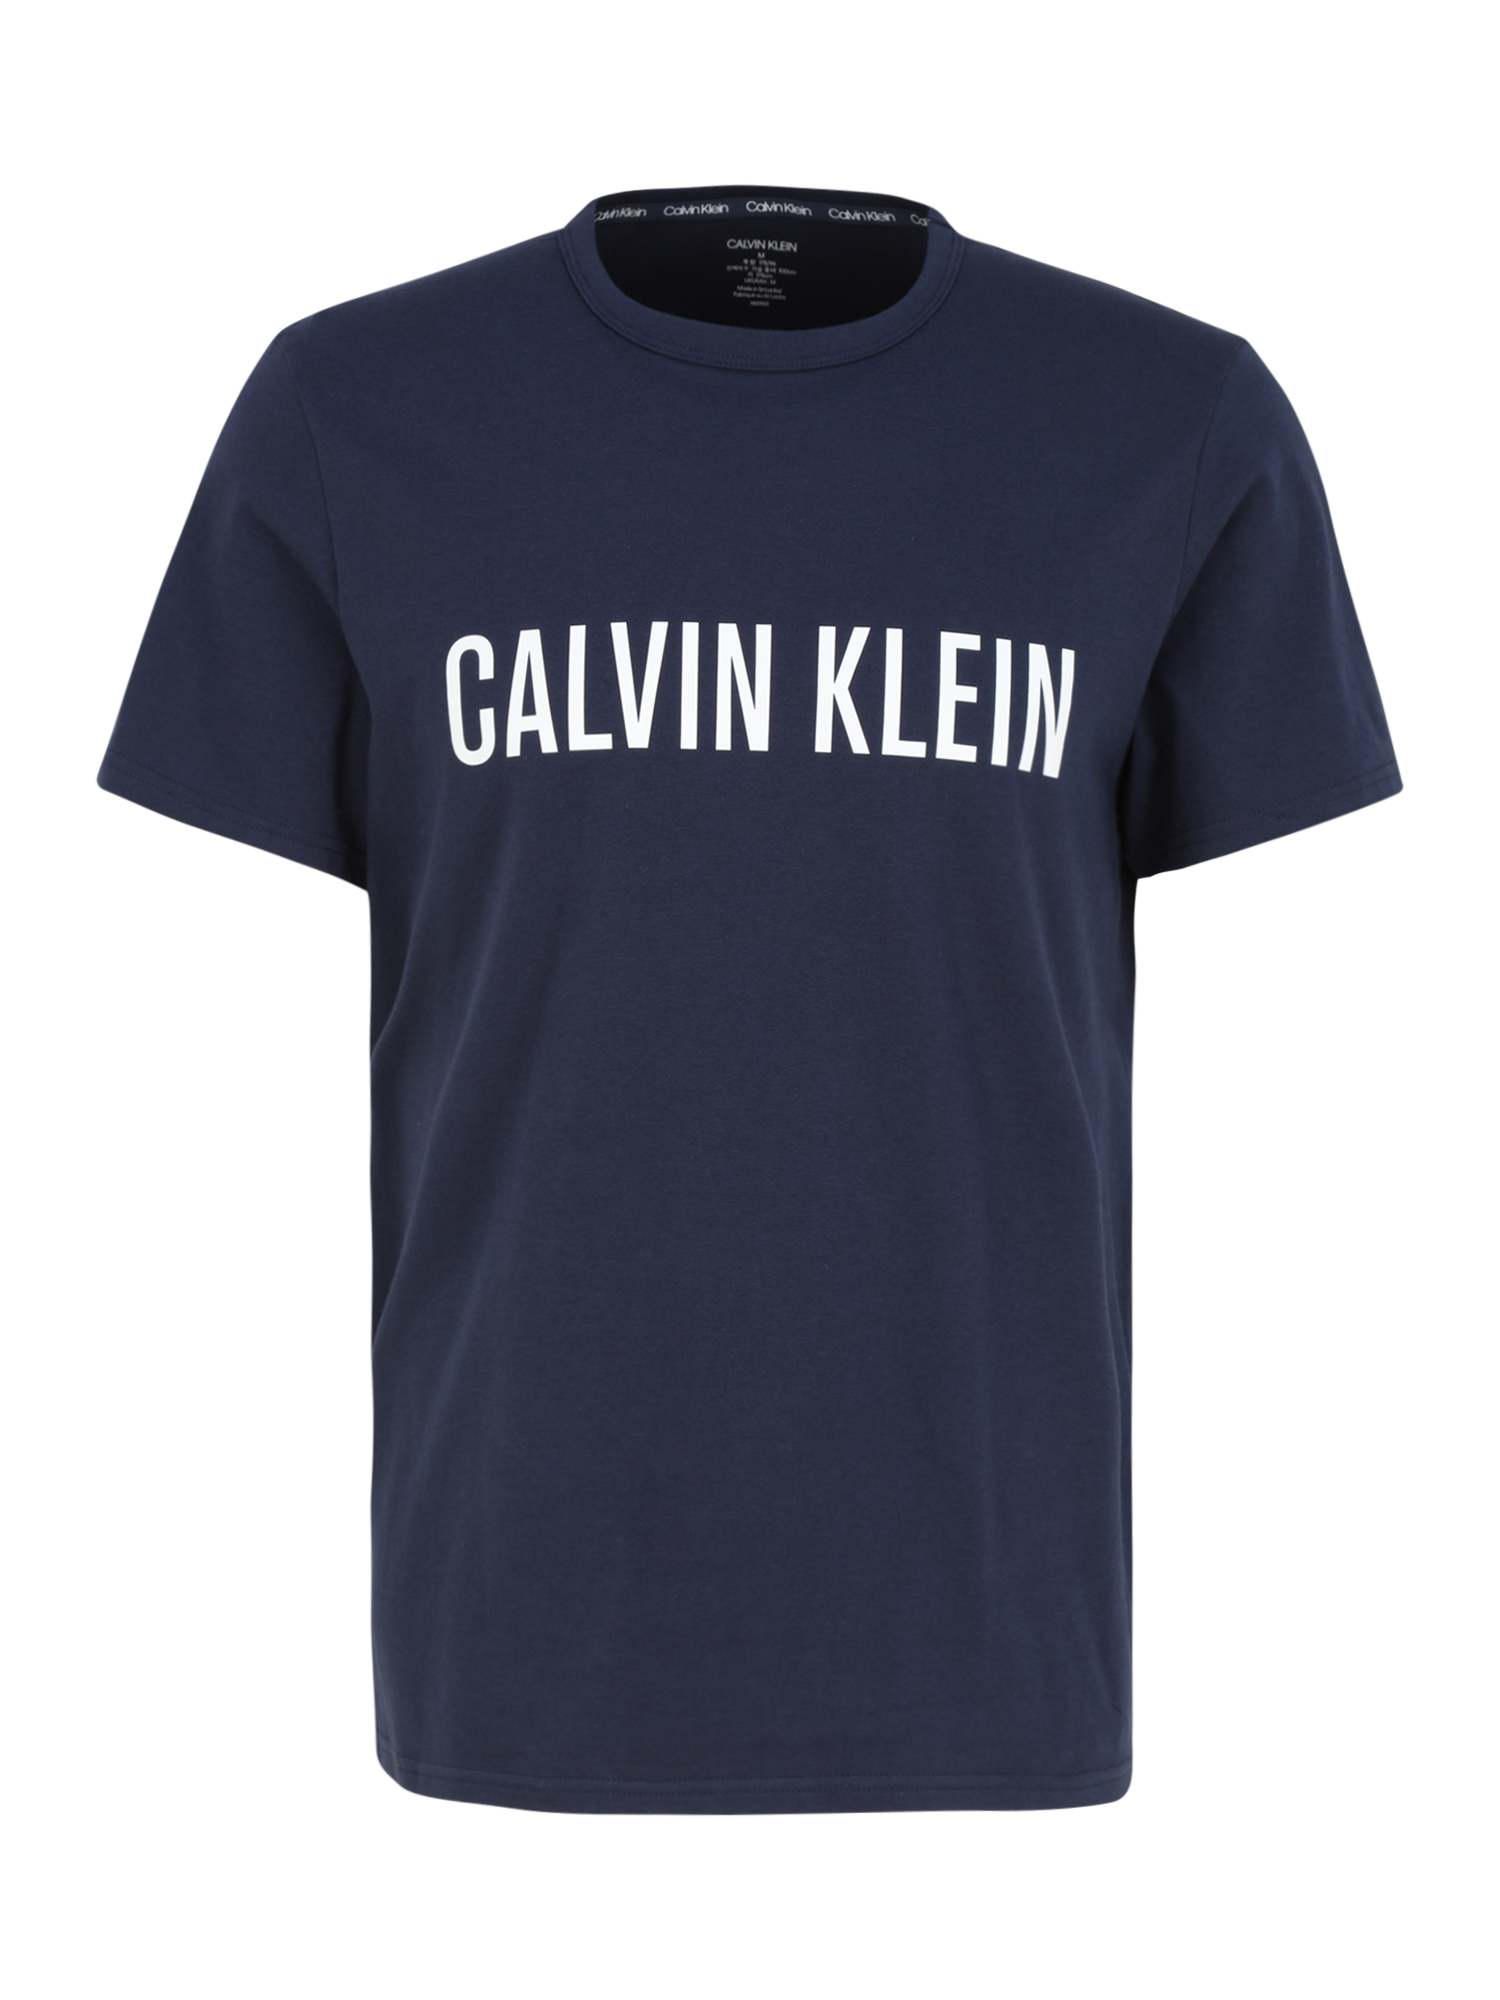 Odzież Mężczyźni Calvin Klein Underwear Koszulka w kolorze Niebieskim 